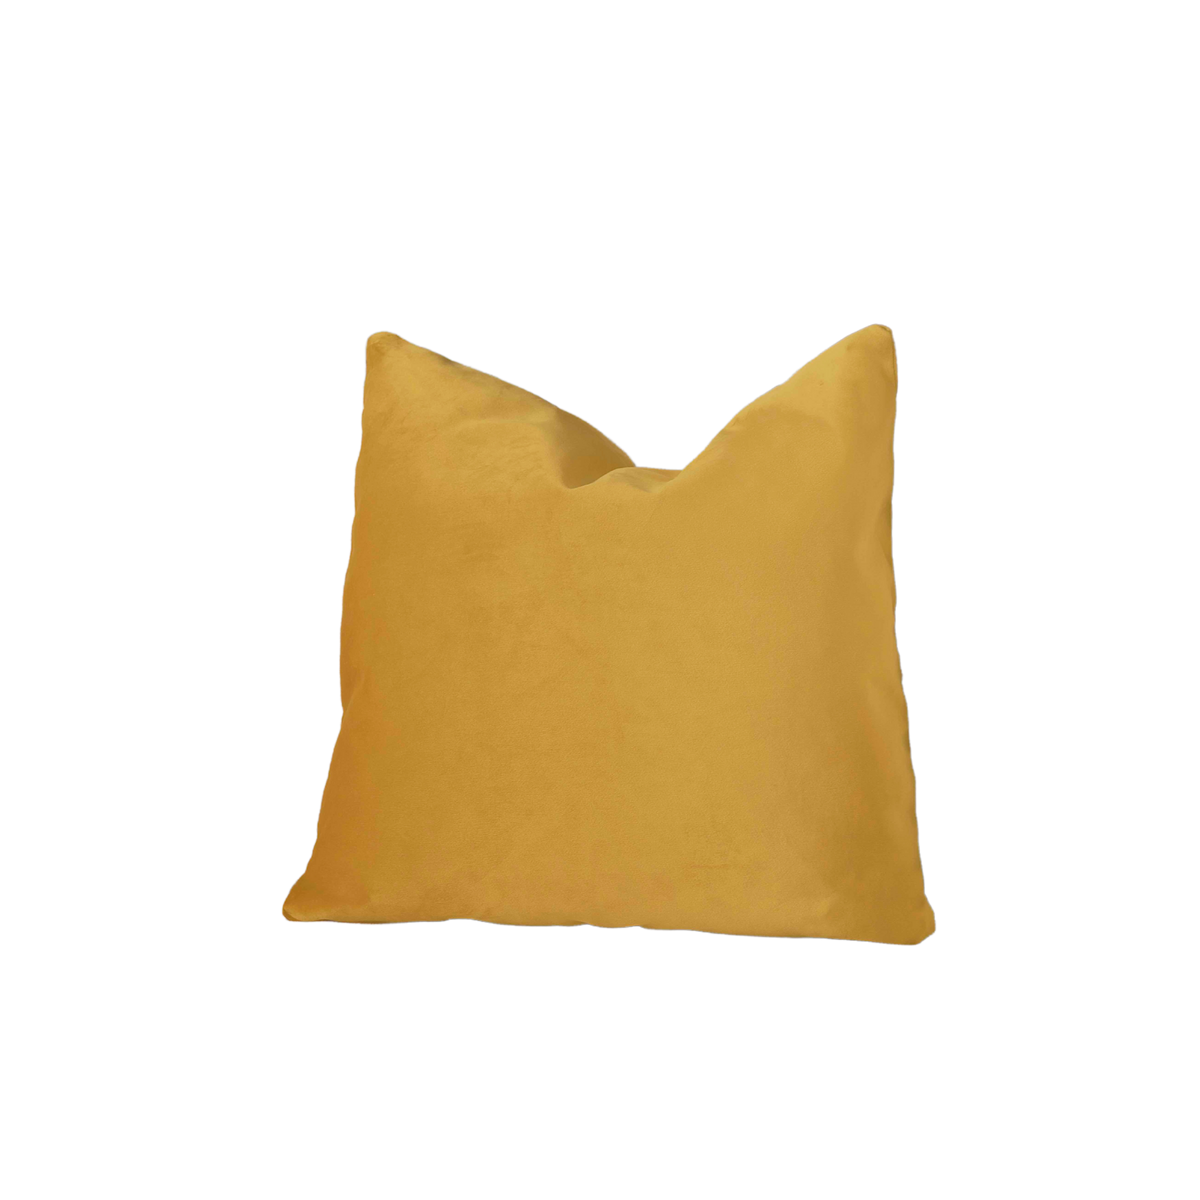 The Square Pillow – Sabai Design